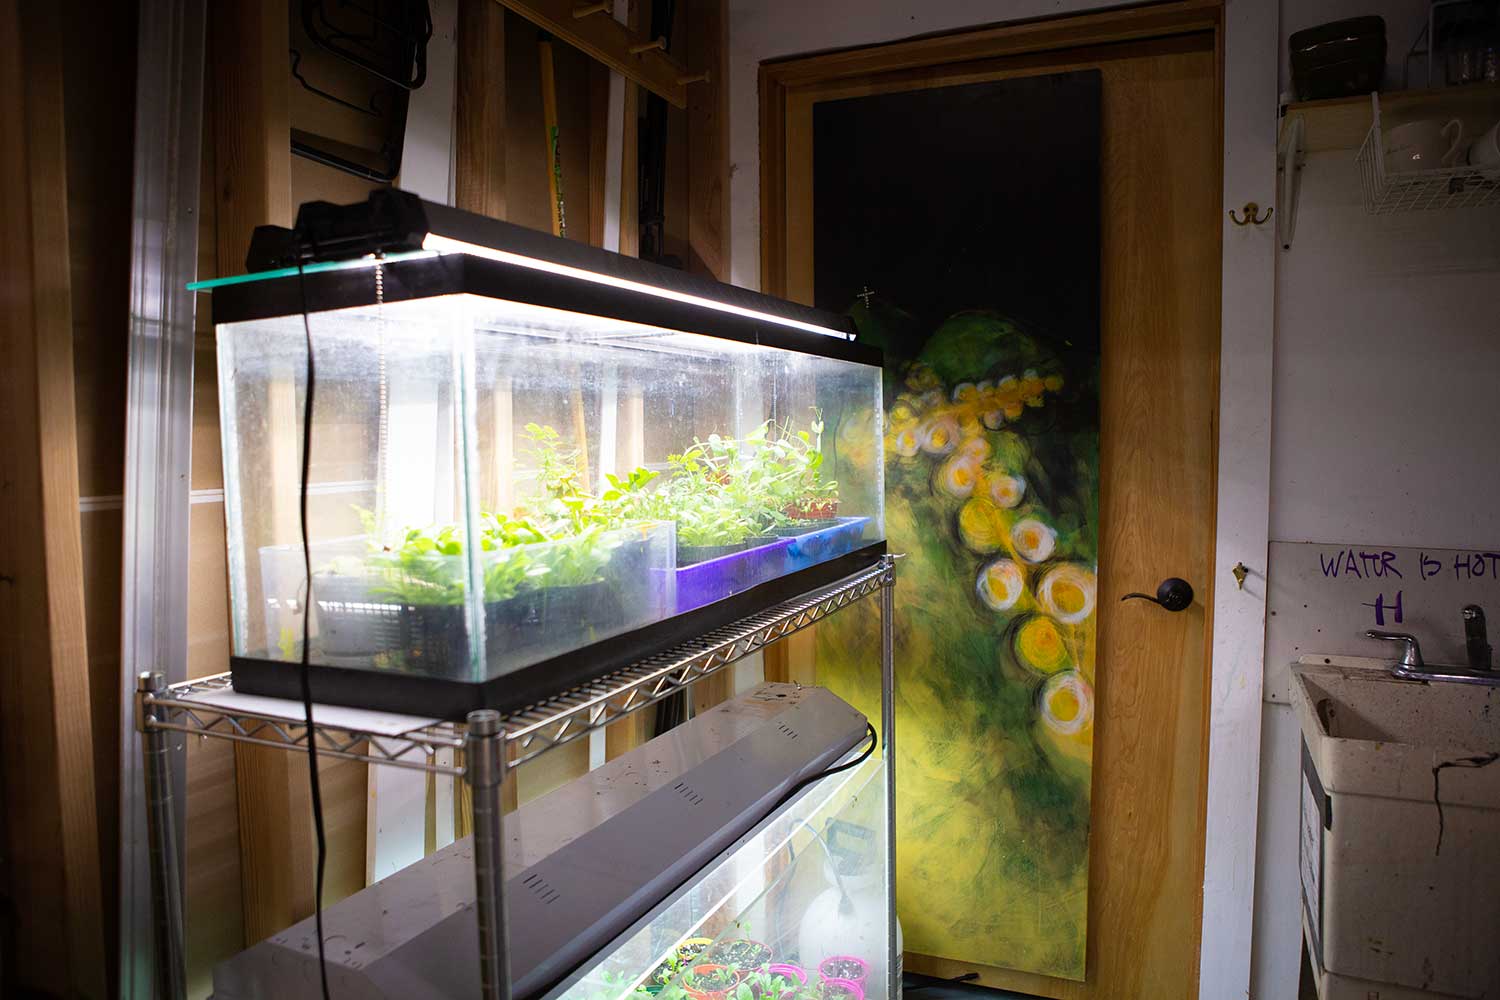 Plants growing indoors at Donna's art studio